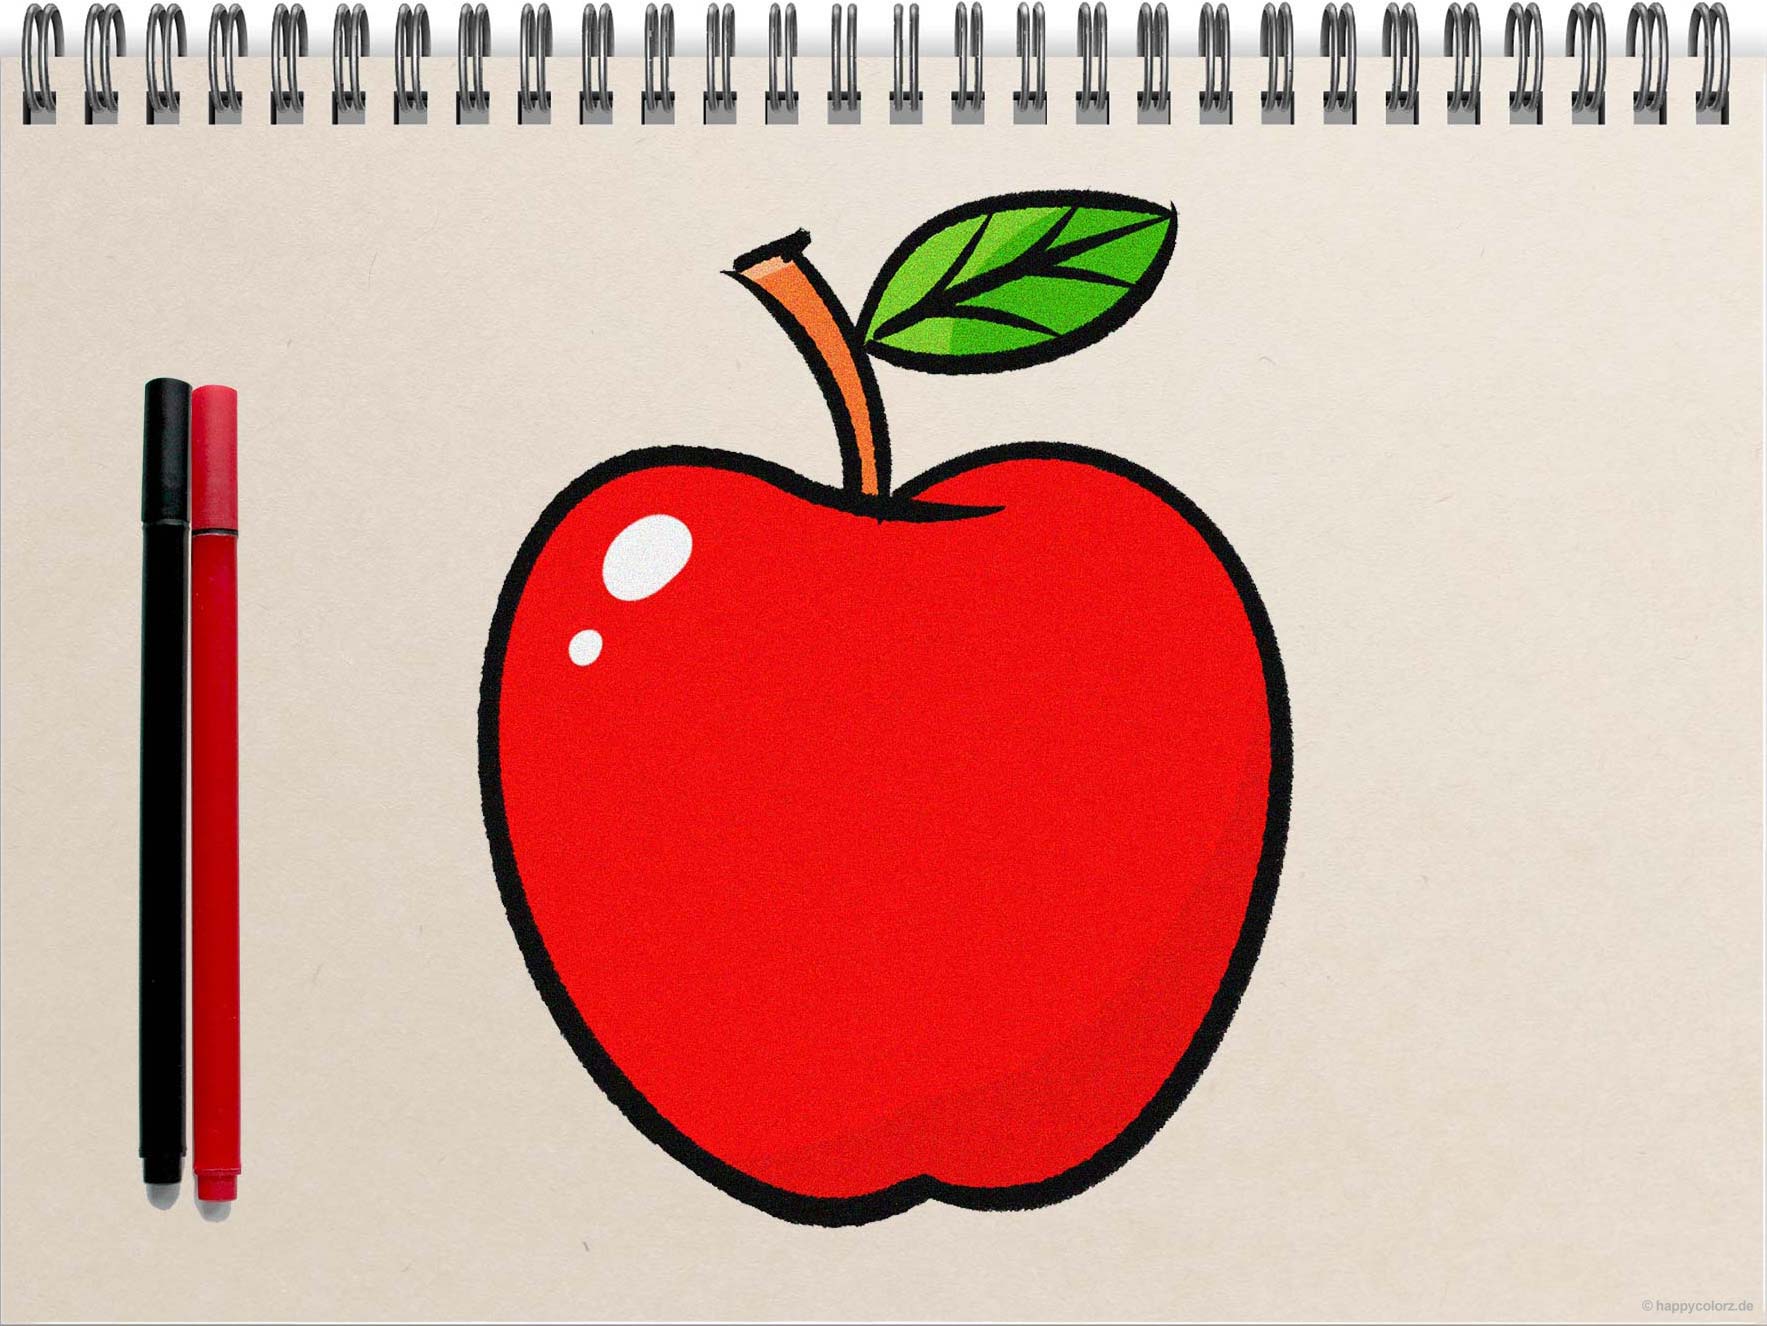 Apfel zeichnen - Schritt-für-Schritt Anleitung mit Vorlagen